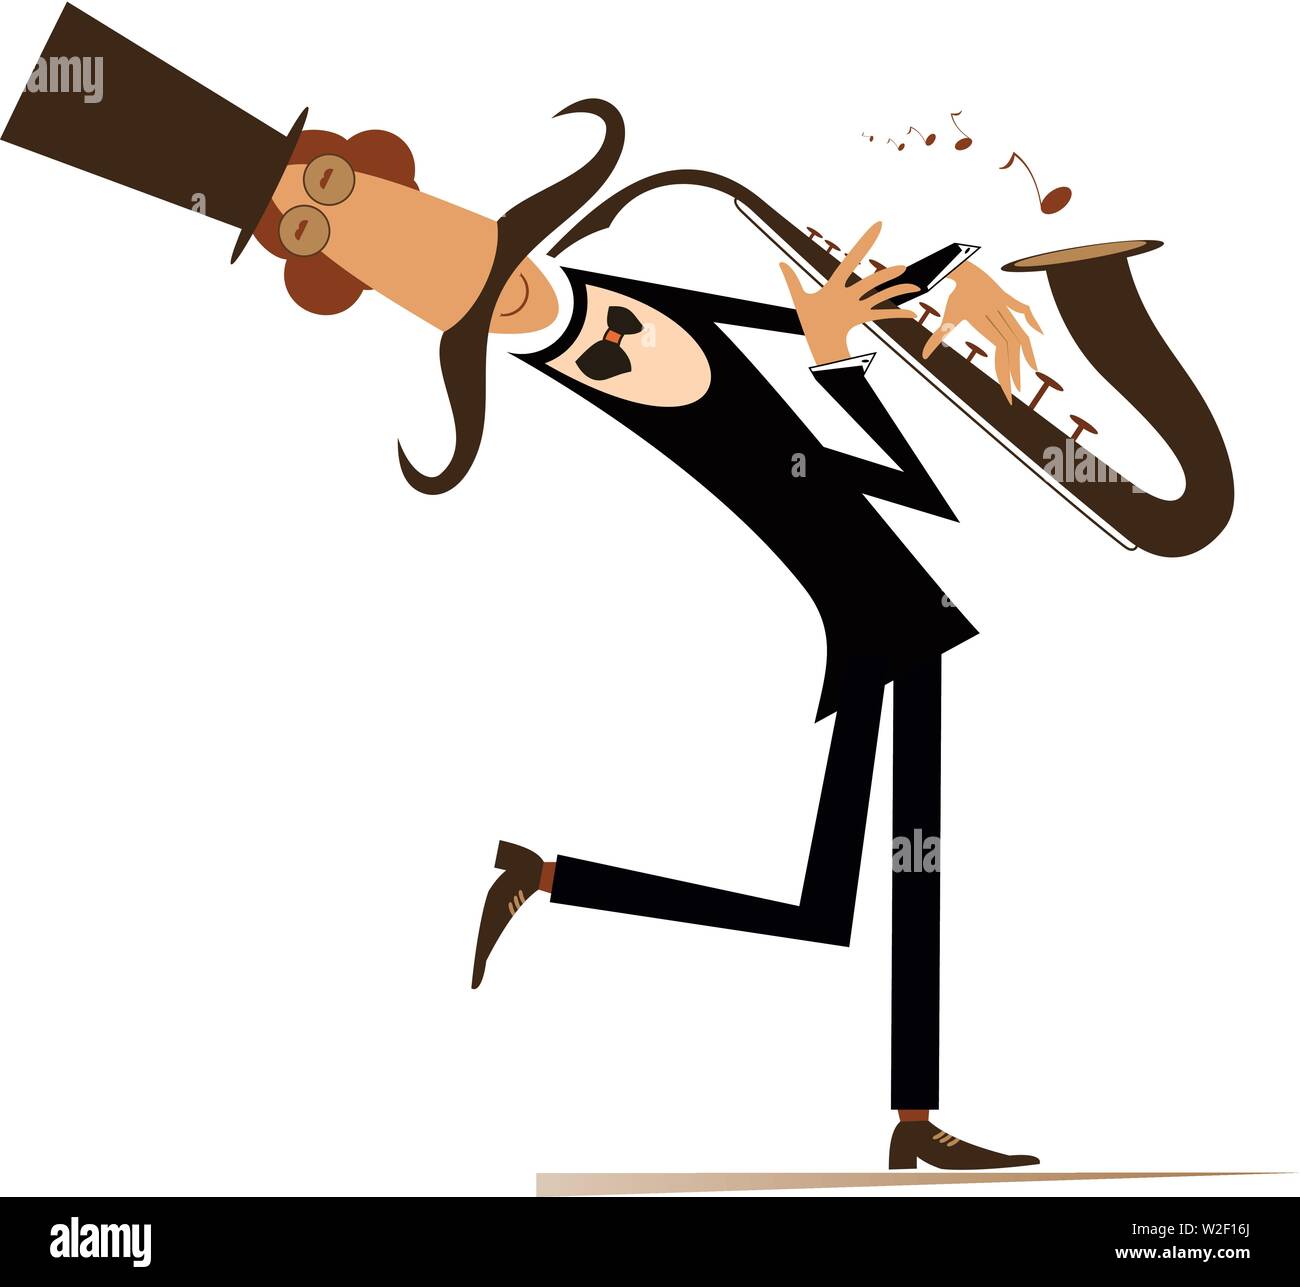 Cartoon illustration saxophoniste longues moustaches.Smiling moustache man in the top hat est la lecture de la musique au saxophone avec inspiration Illustration de Vecteur